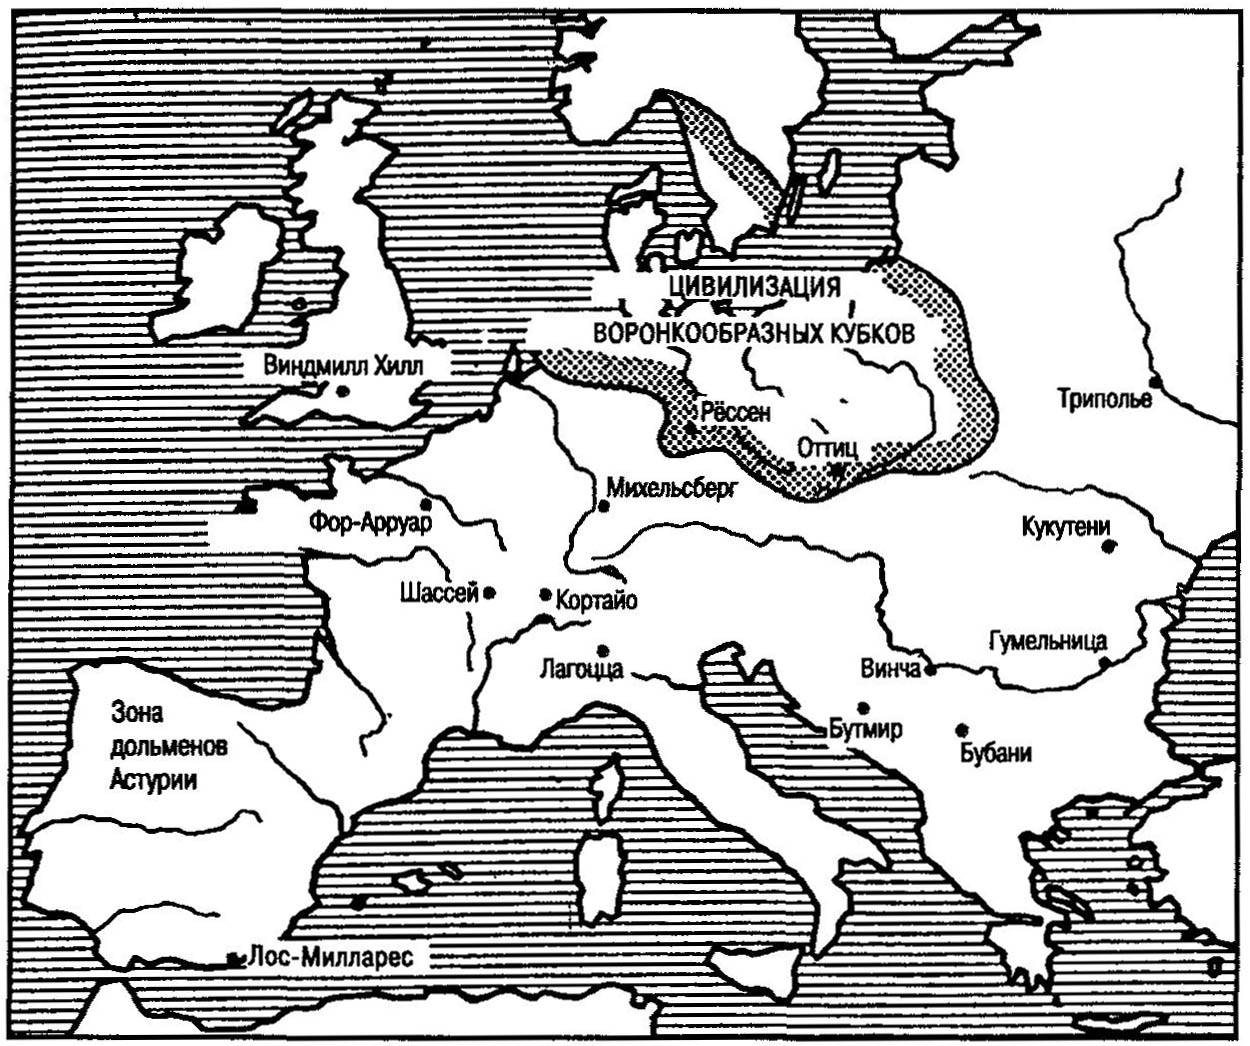 Цивилизации позднего неолита (середина 3-го тысячелетия до нашей эры)